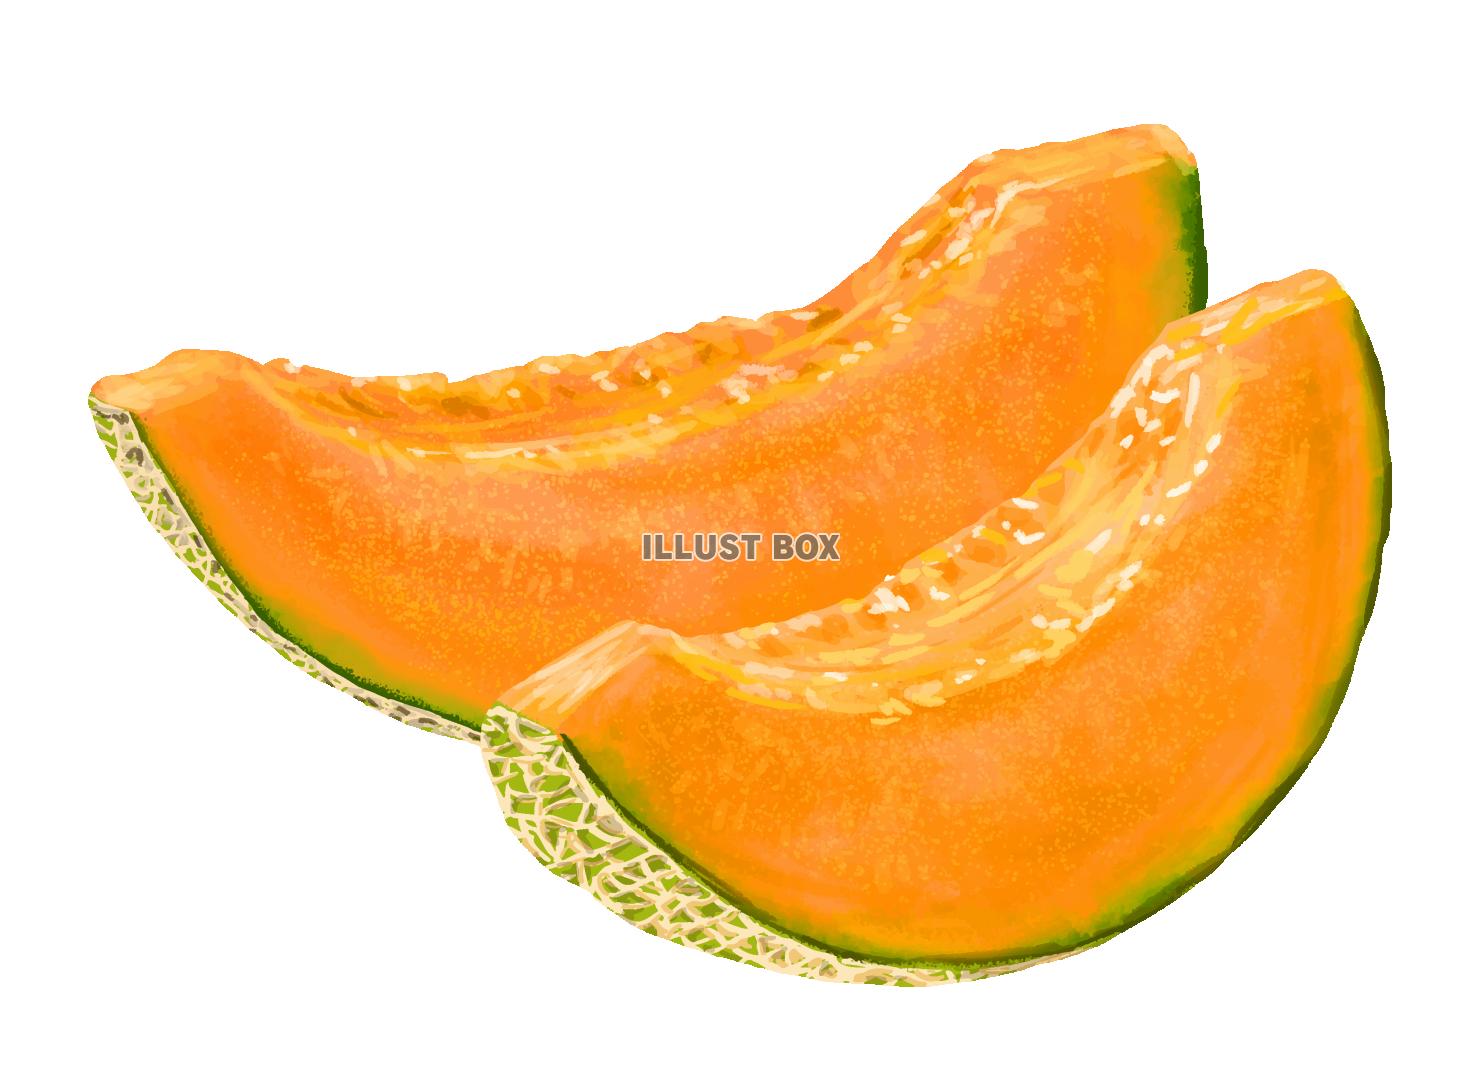 リアルなオレンジ色のメロン(zipファイル: pdf,jpg...